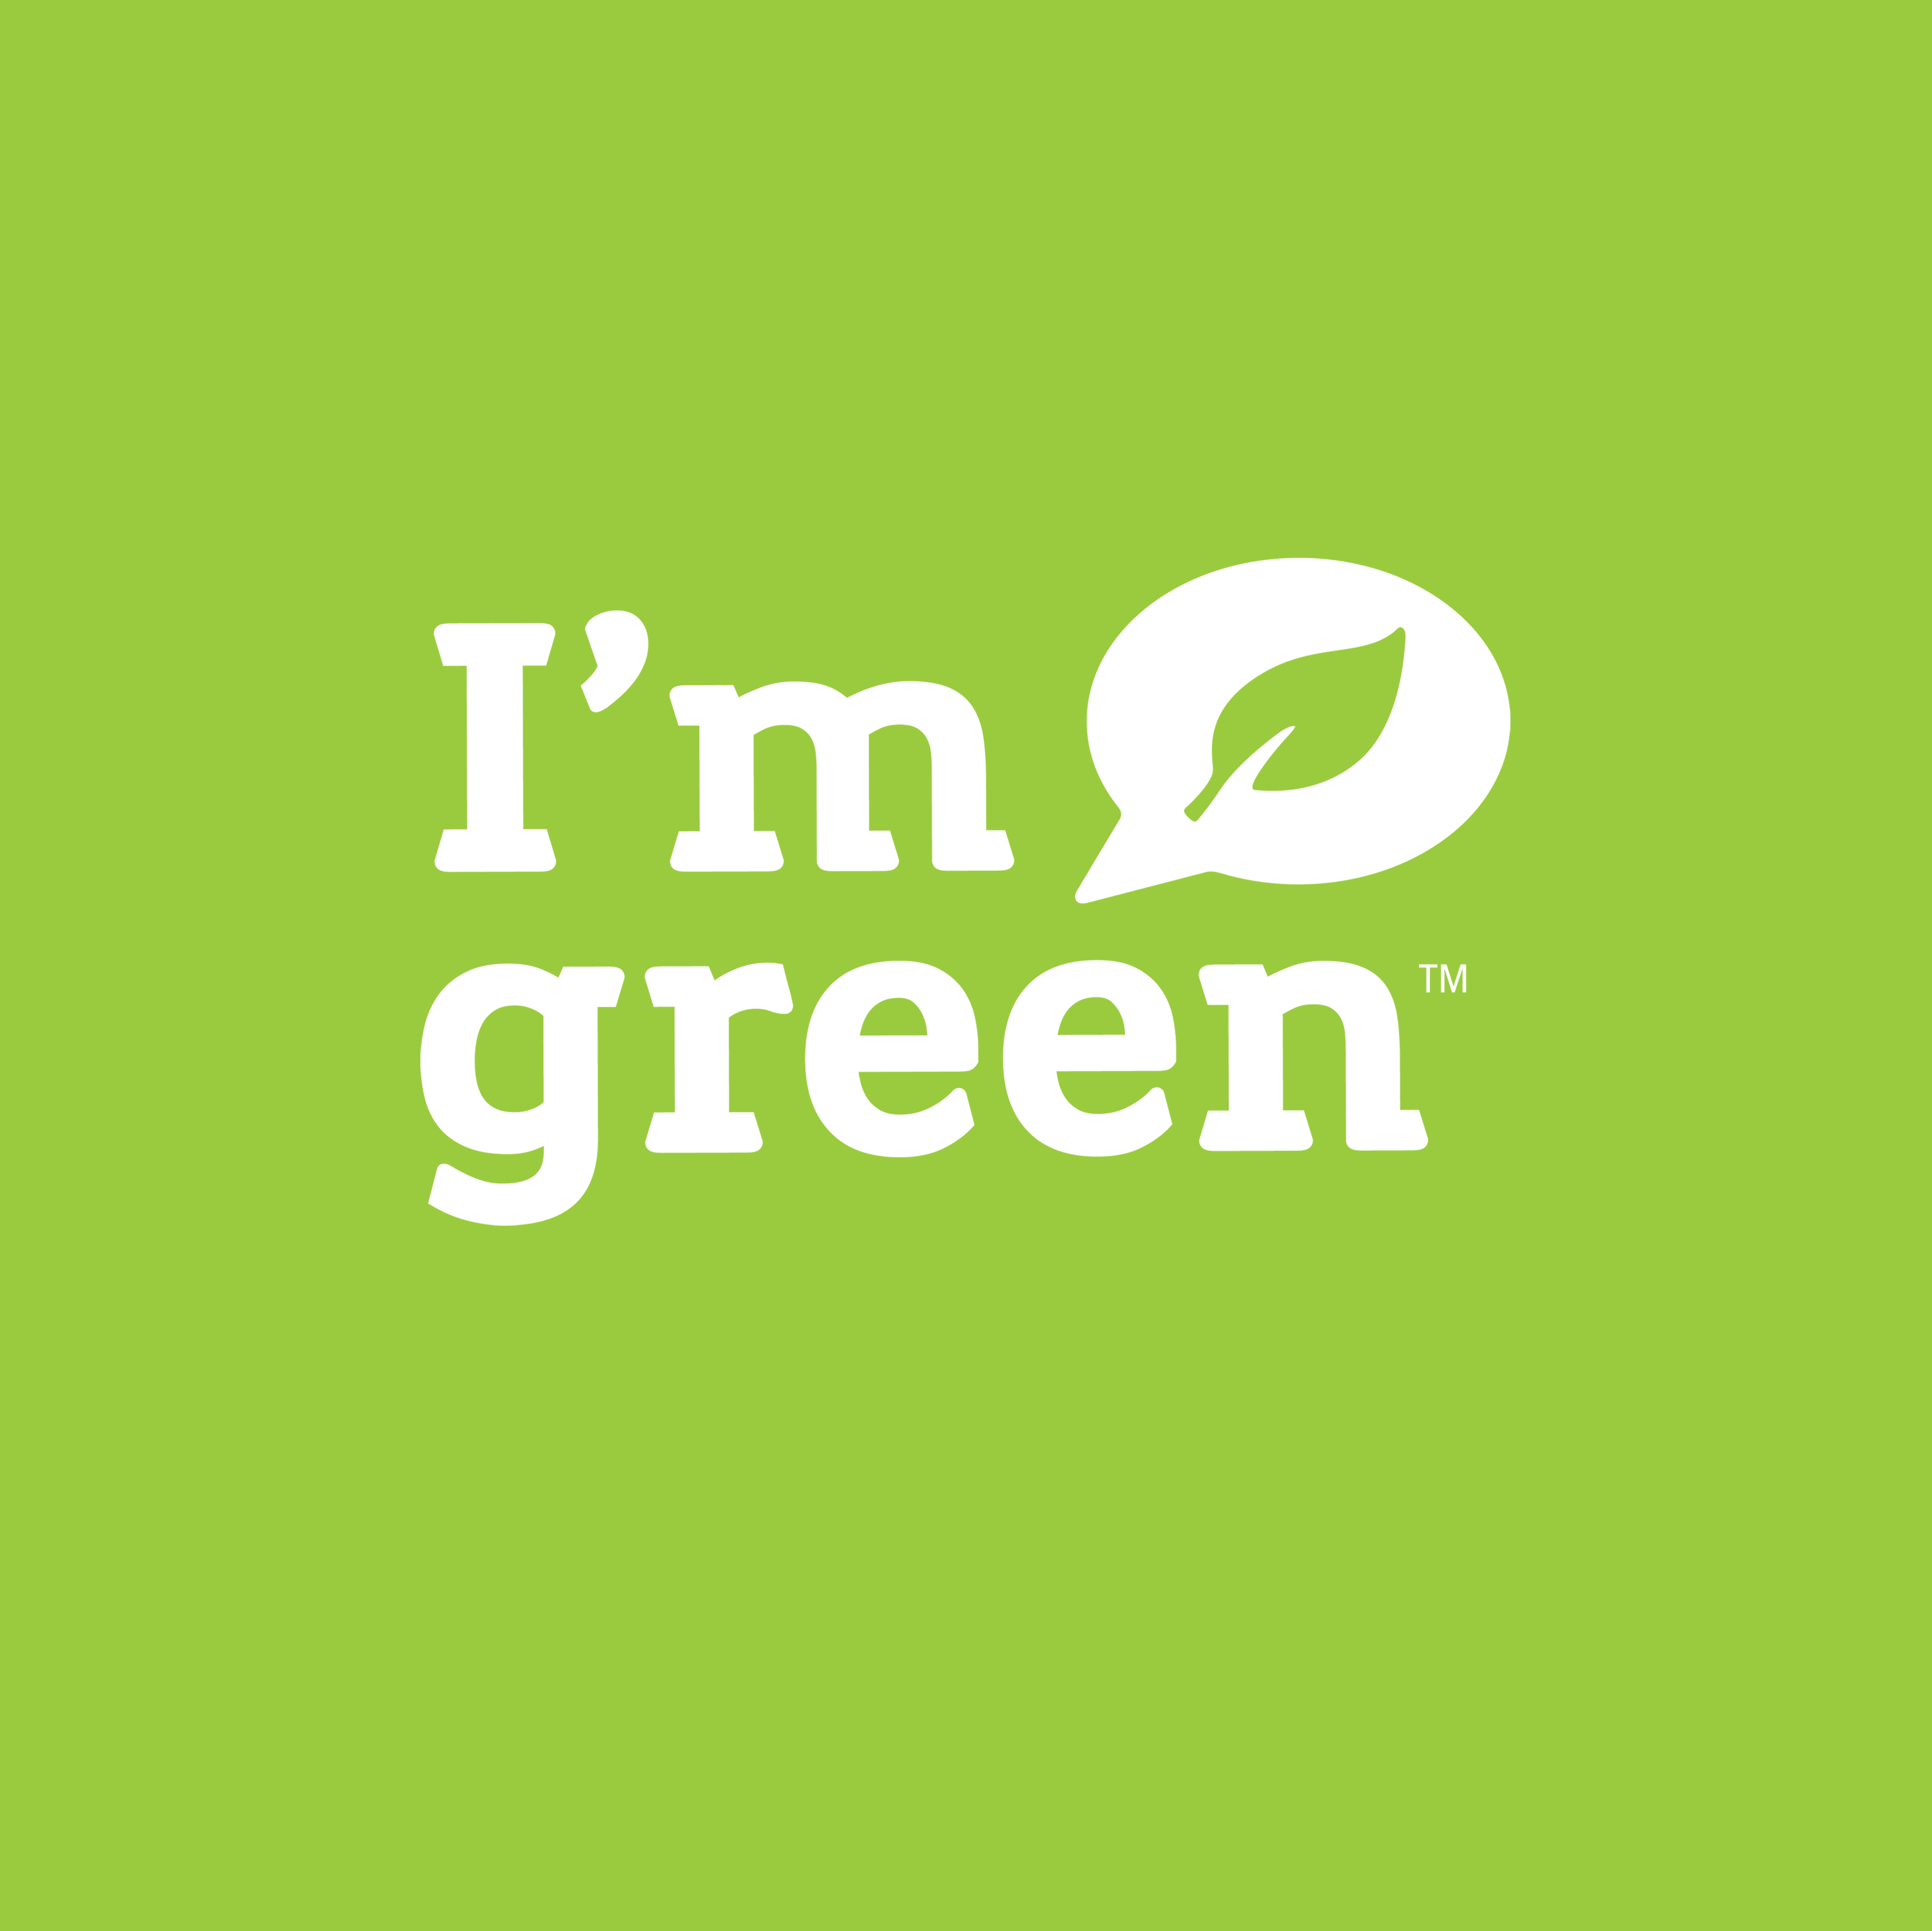 i-am-green-plastic